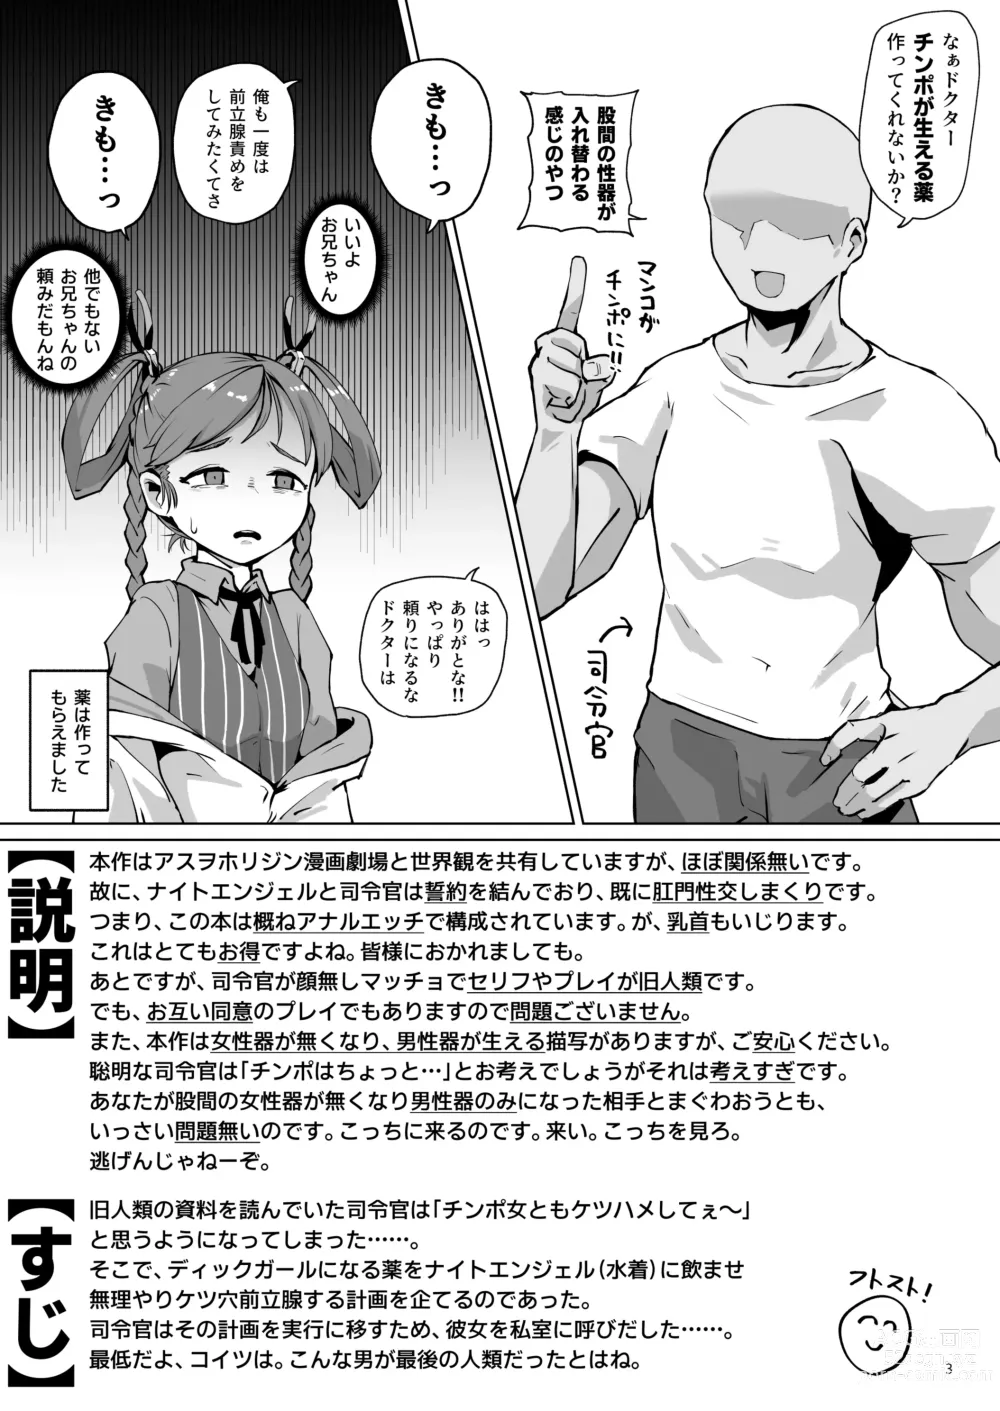 Page 2 of doujinshi Asuwohorijin Manga Gekijou Another